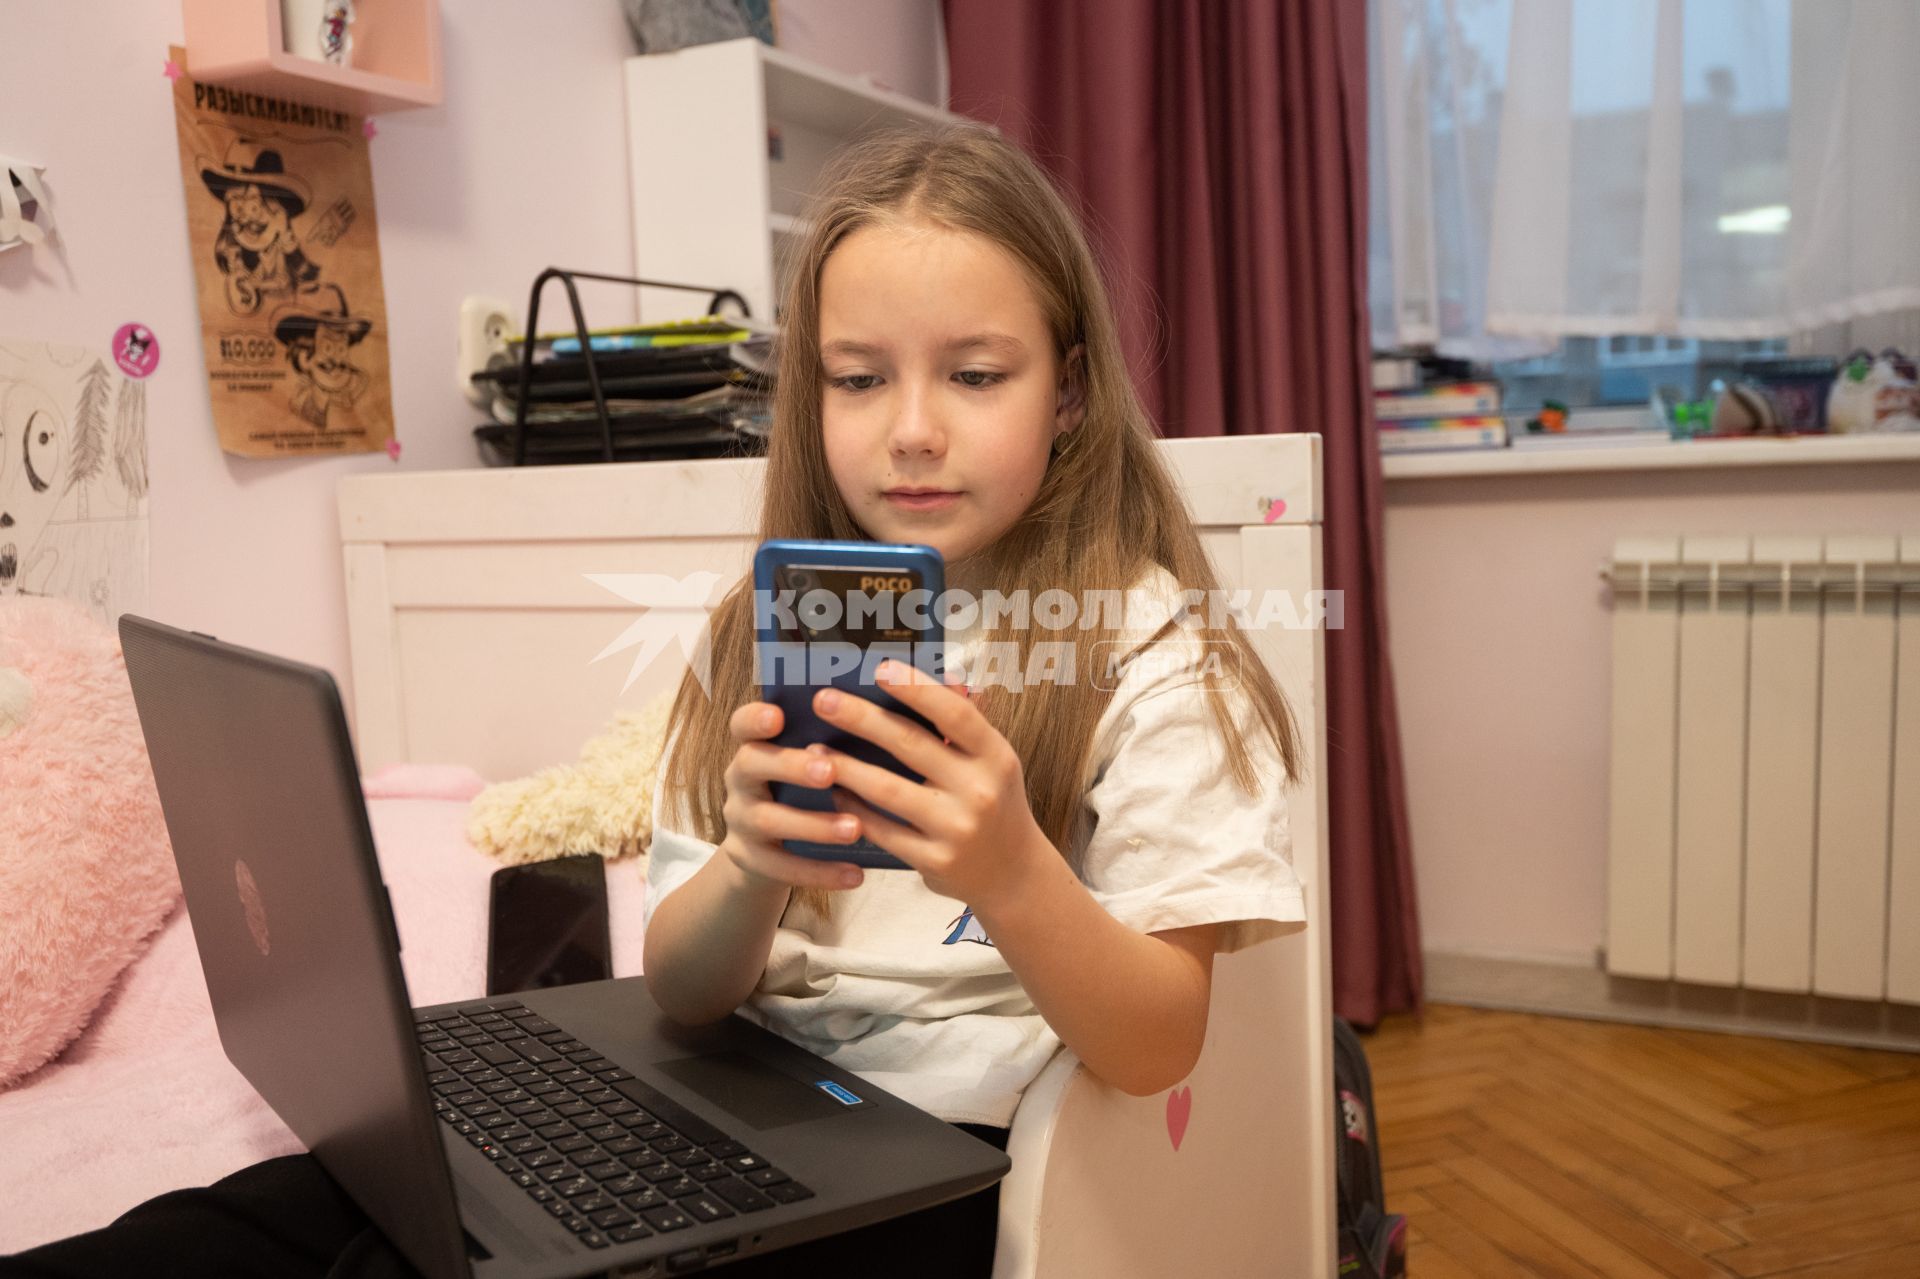 Санкт-Петербург. Девочка с мобильным телефоном и ноутбуком.